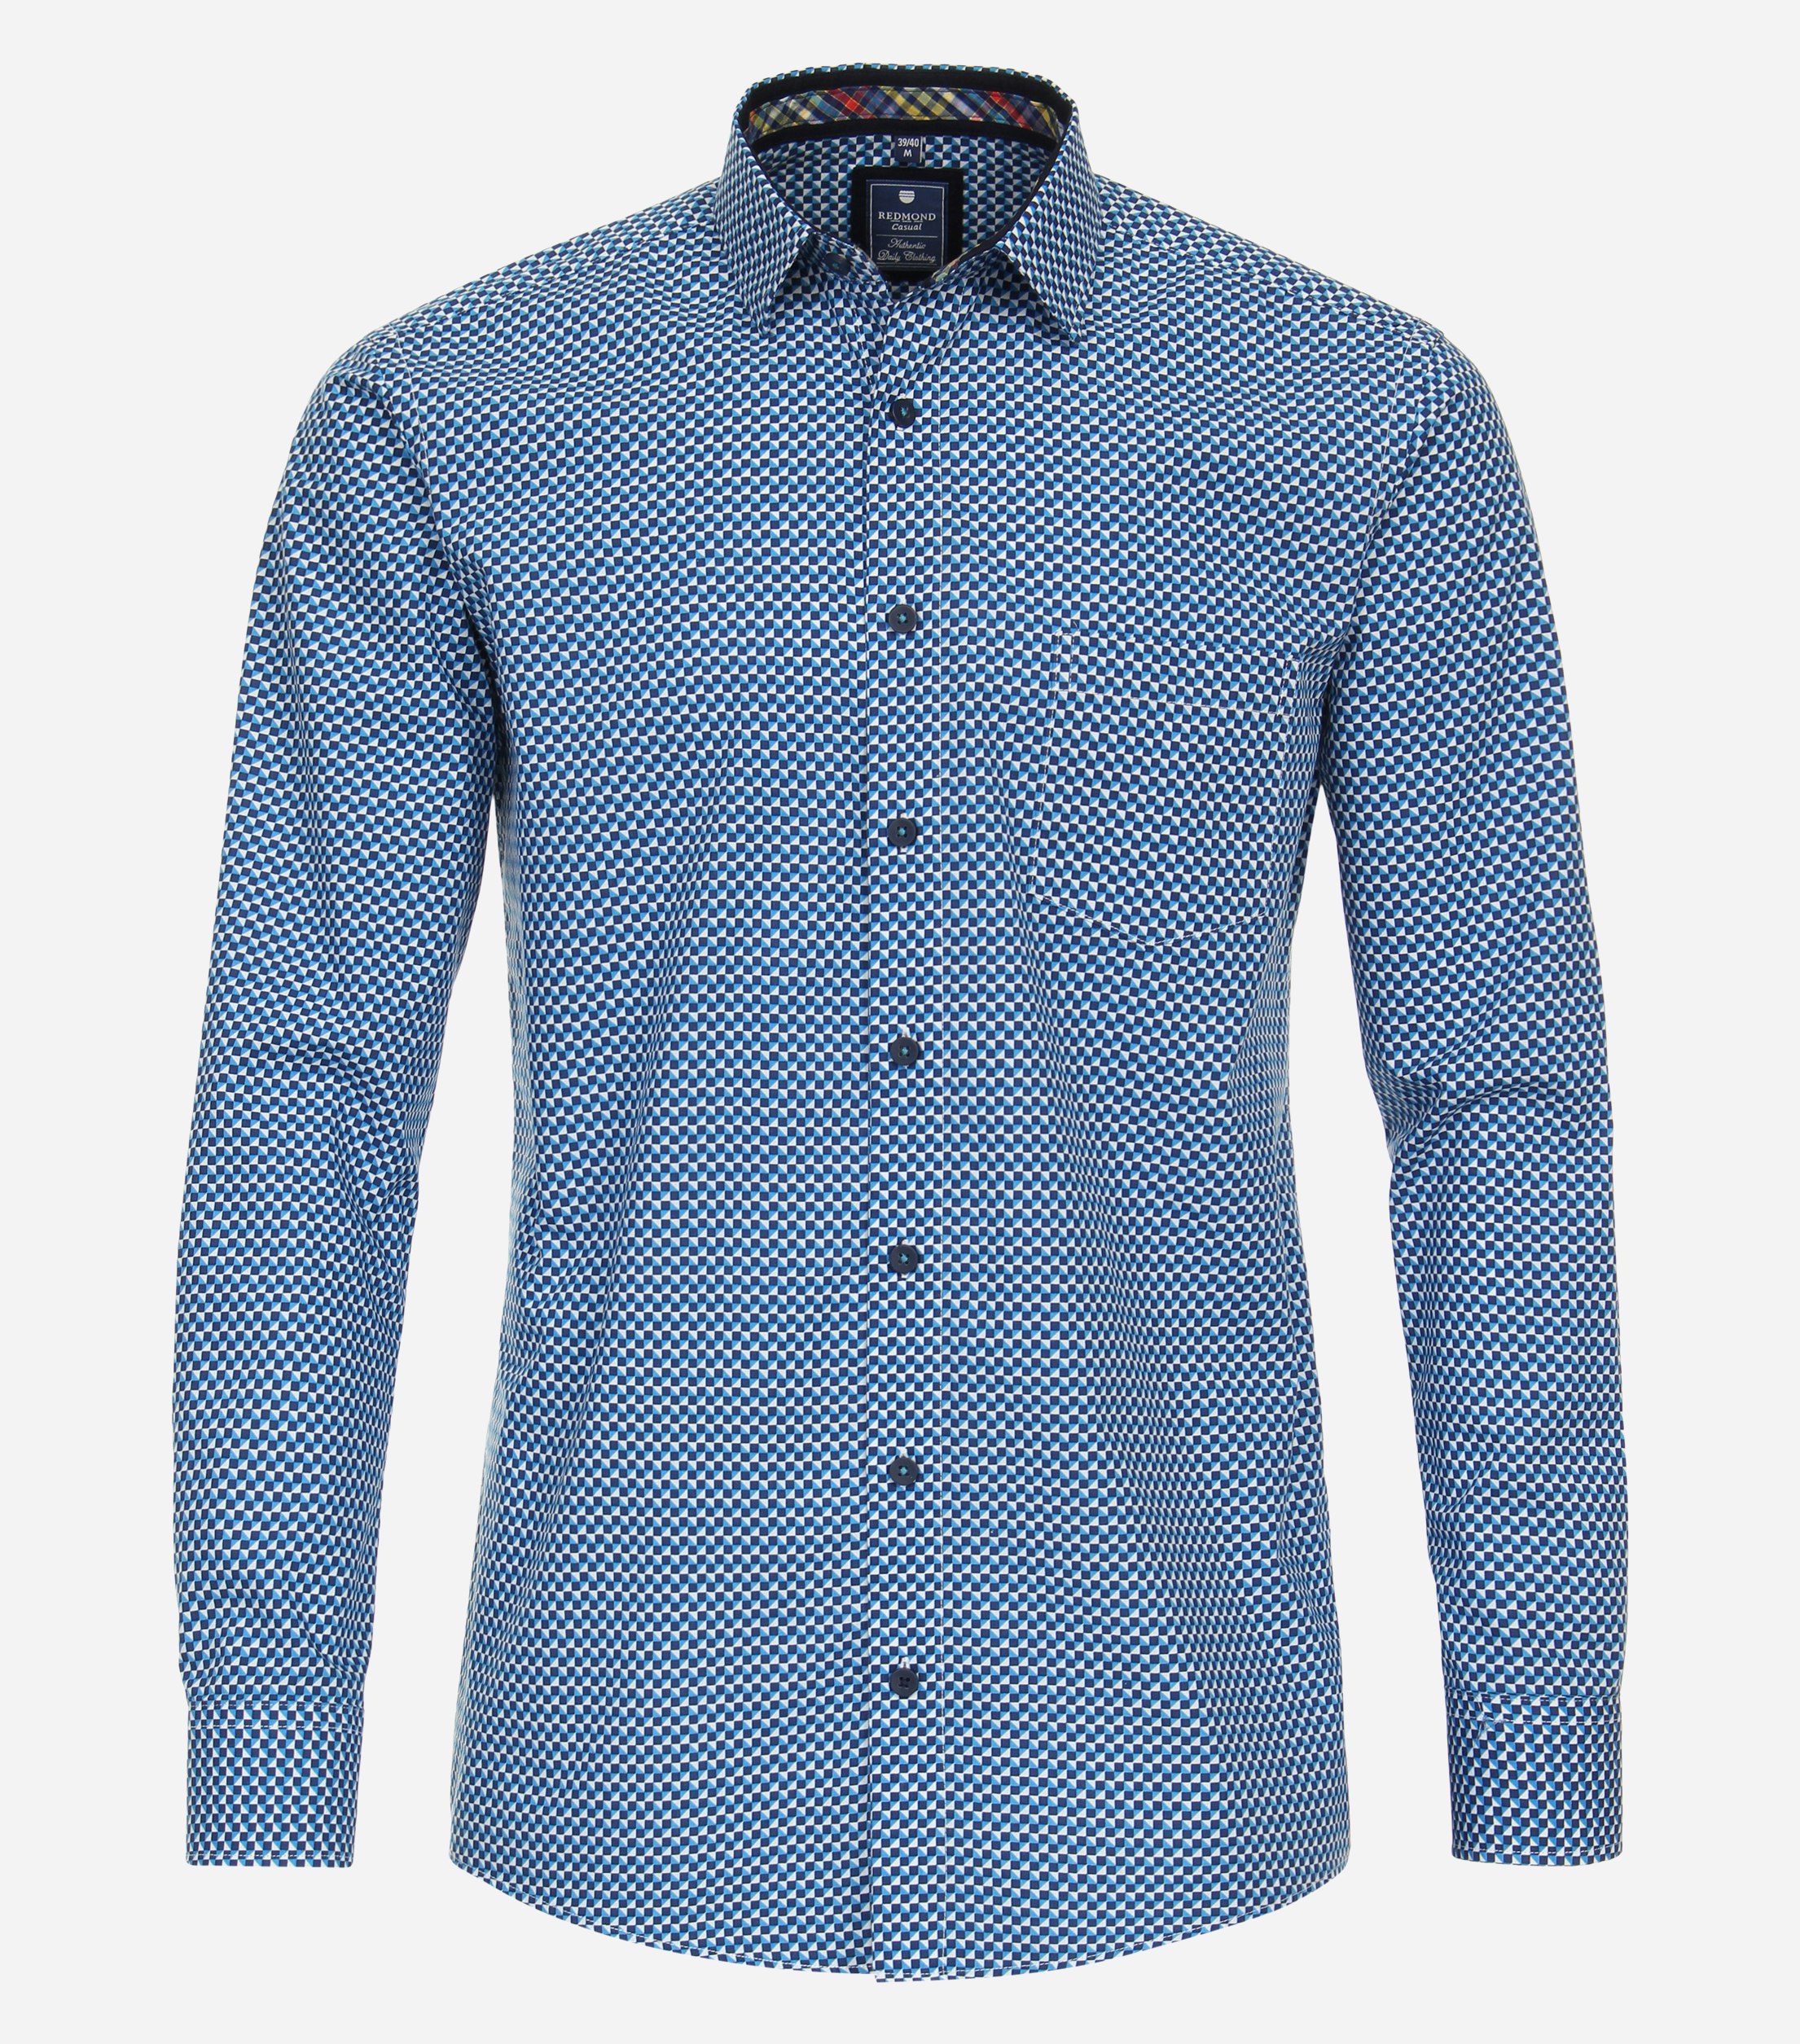 Redmond comfort fit overhemd, popeline, blauw dessin